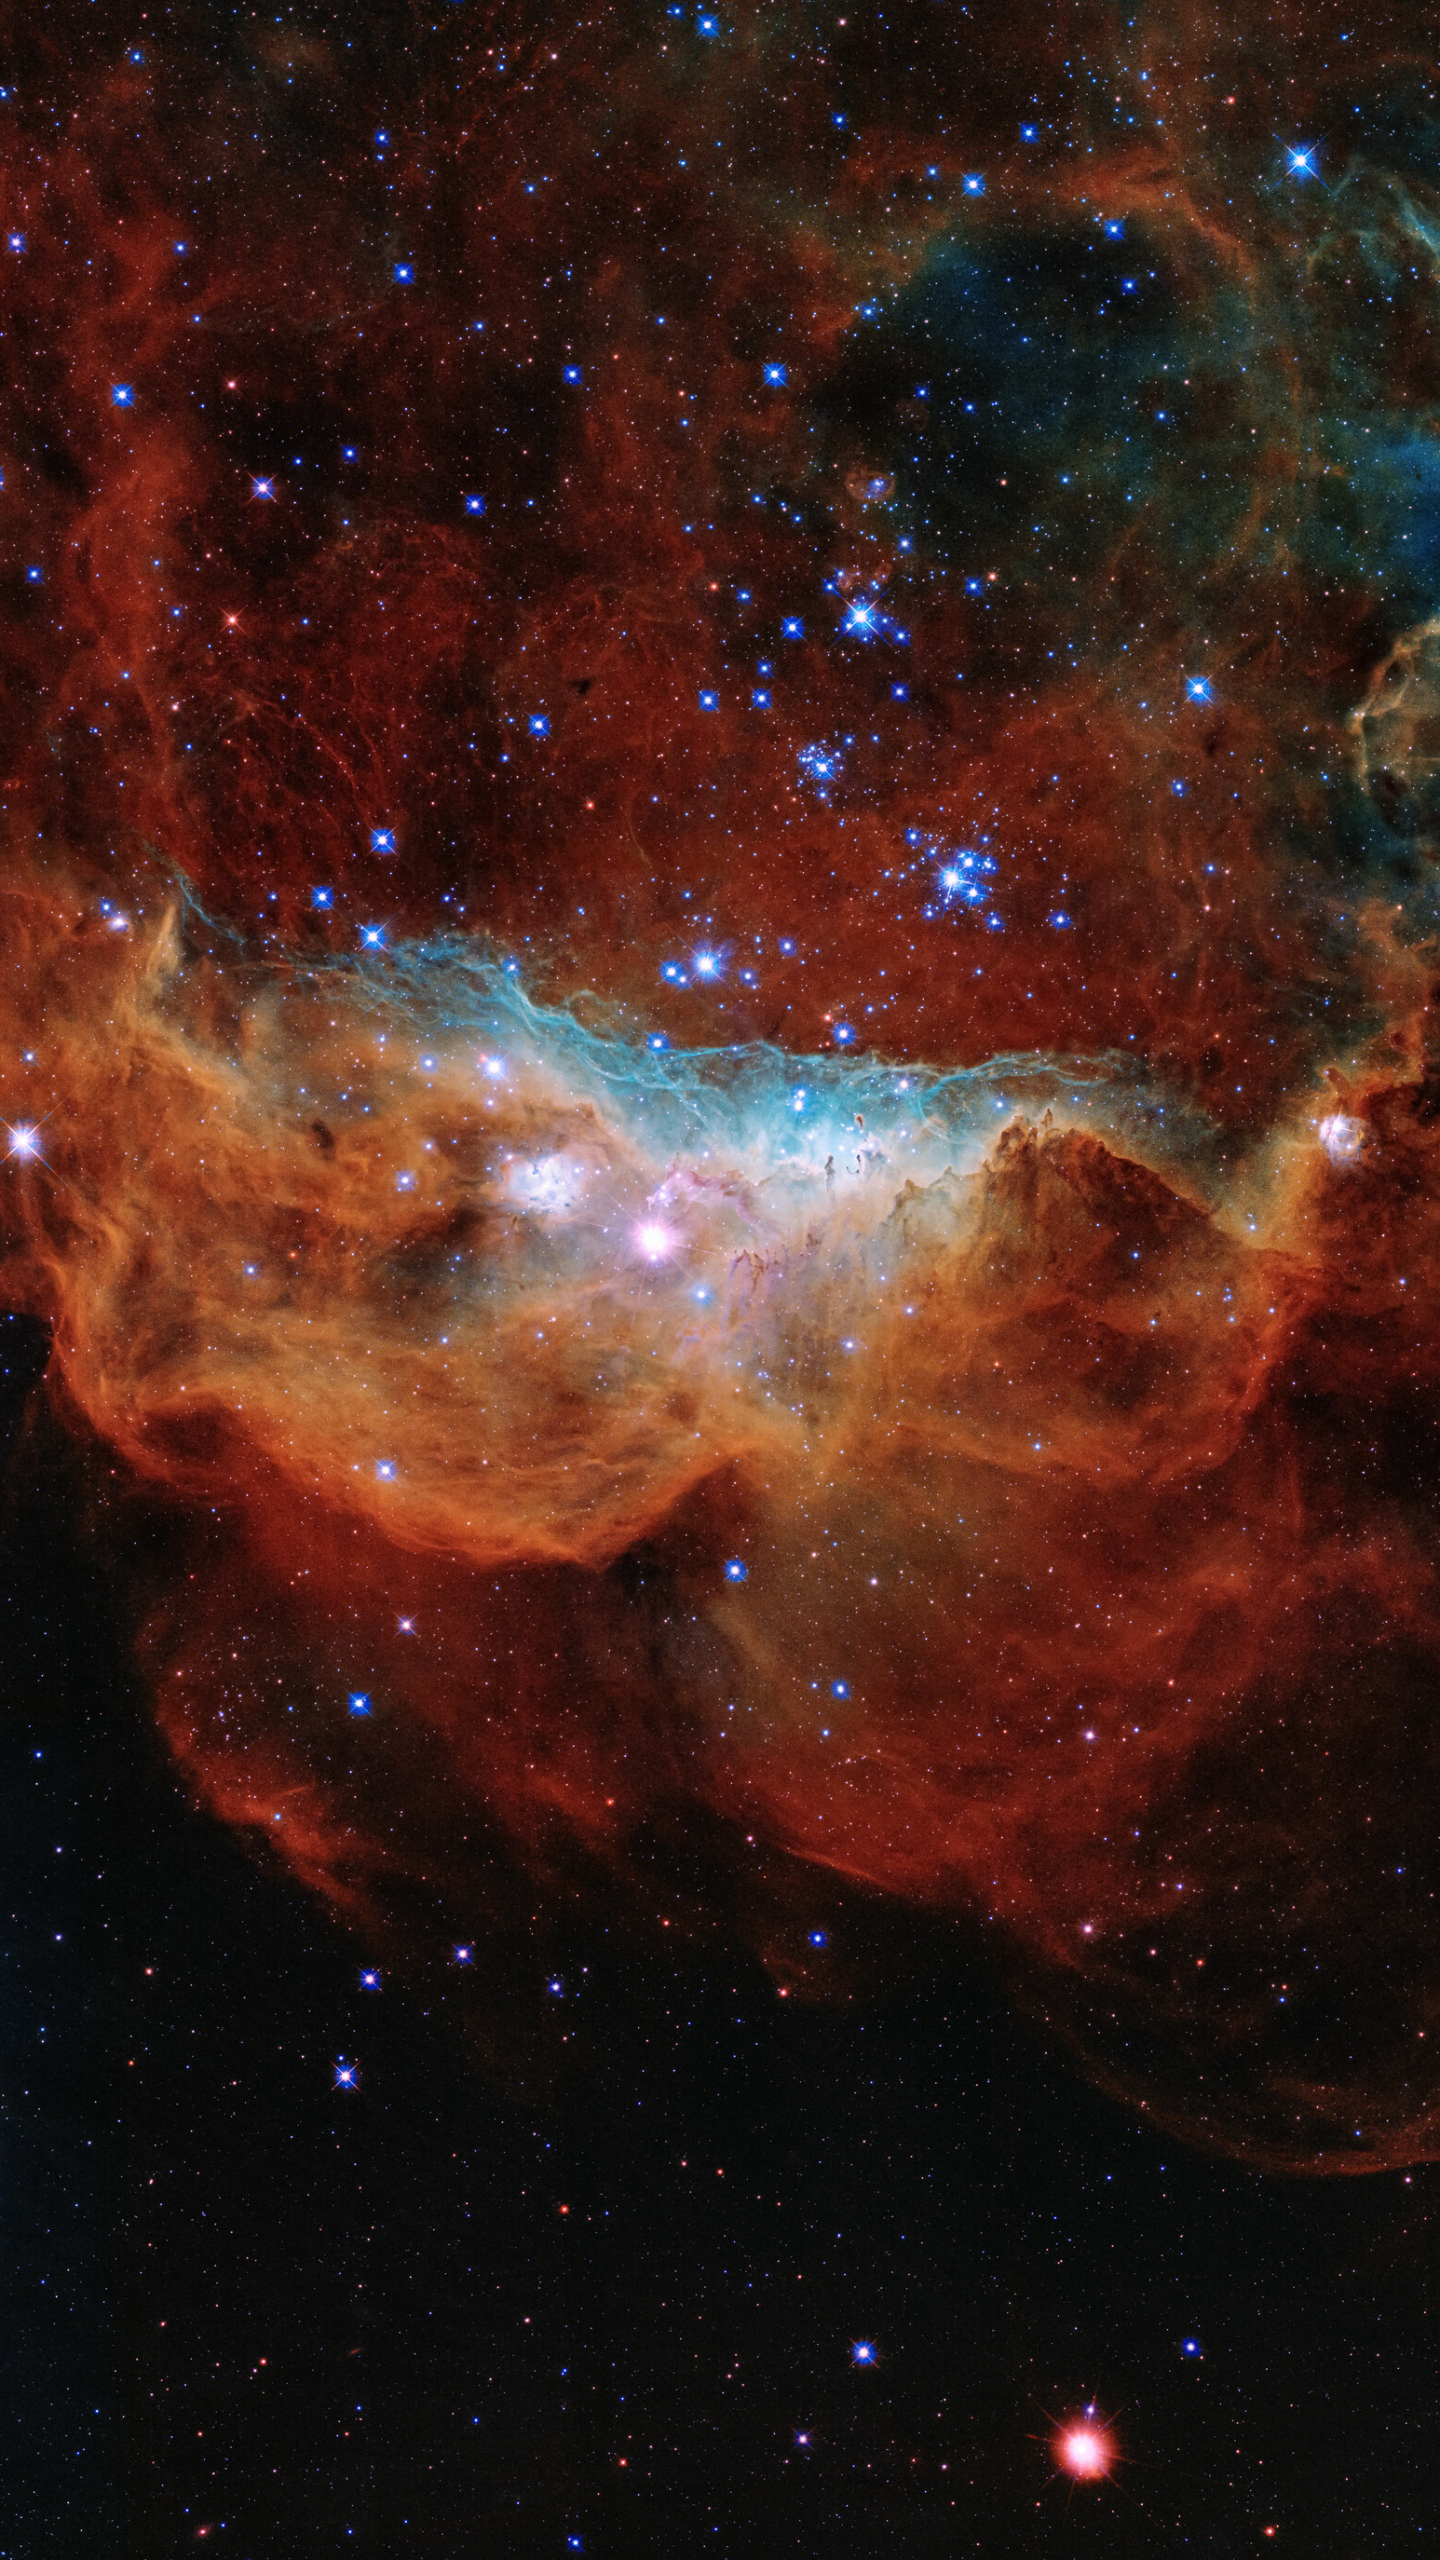 Descarga gratuita de fondo de pantalla para móvil de Estrellas, Nebulosa, Espacio, Ciencia Ficción.